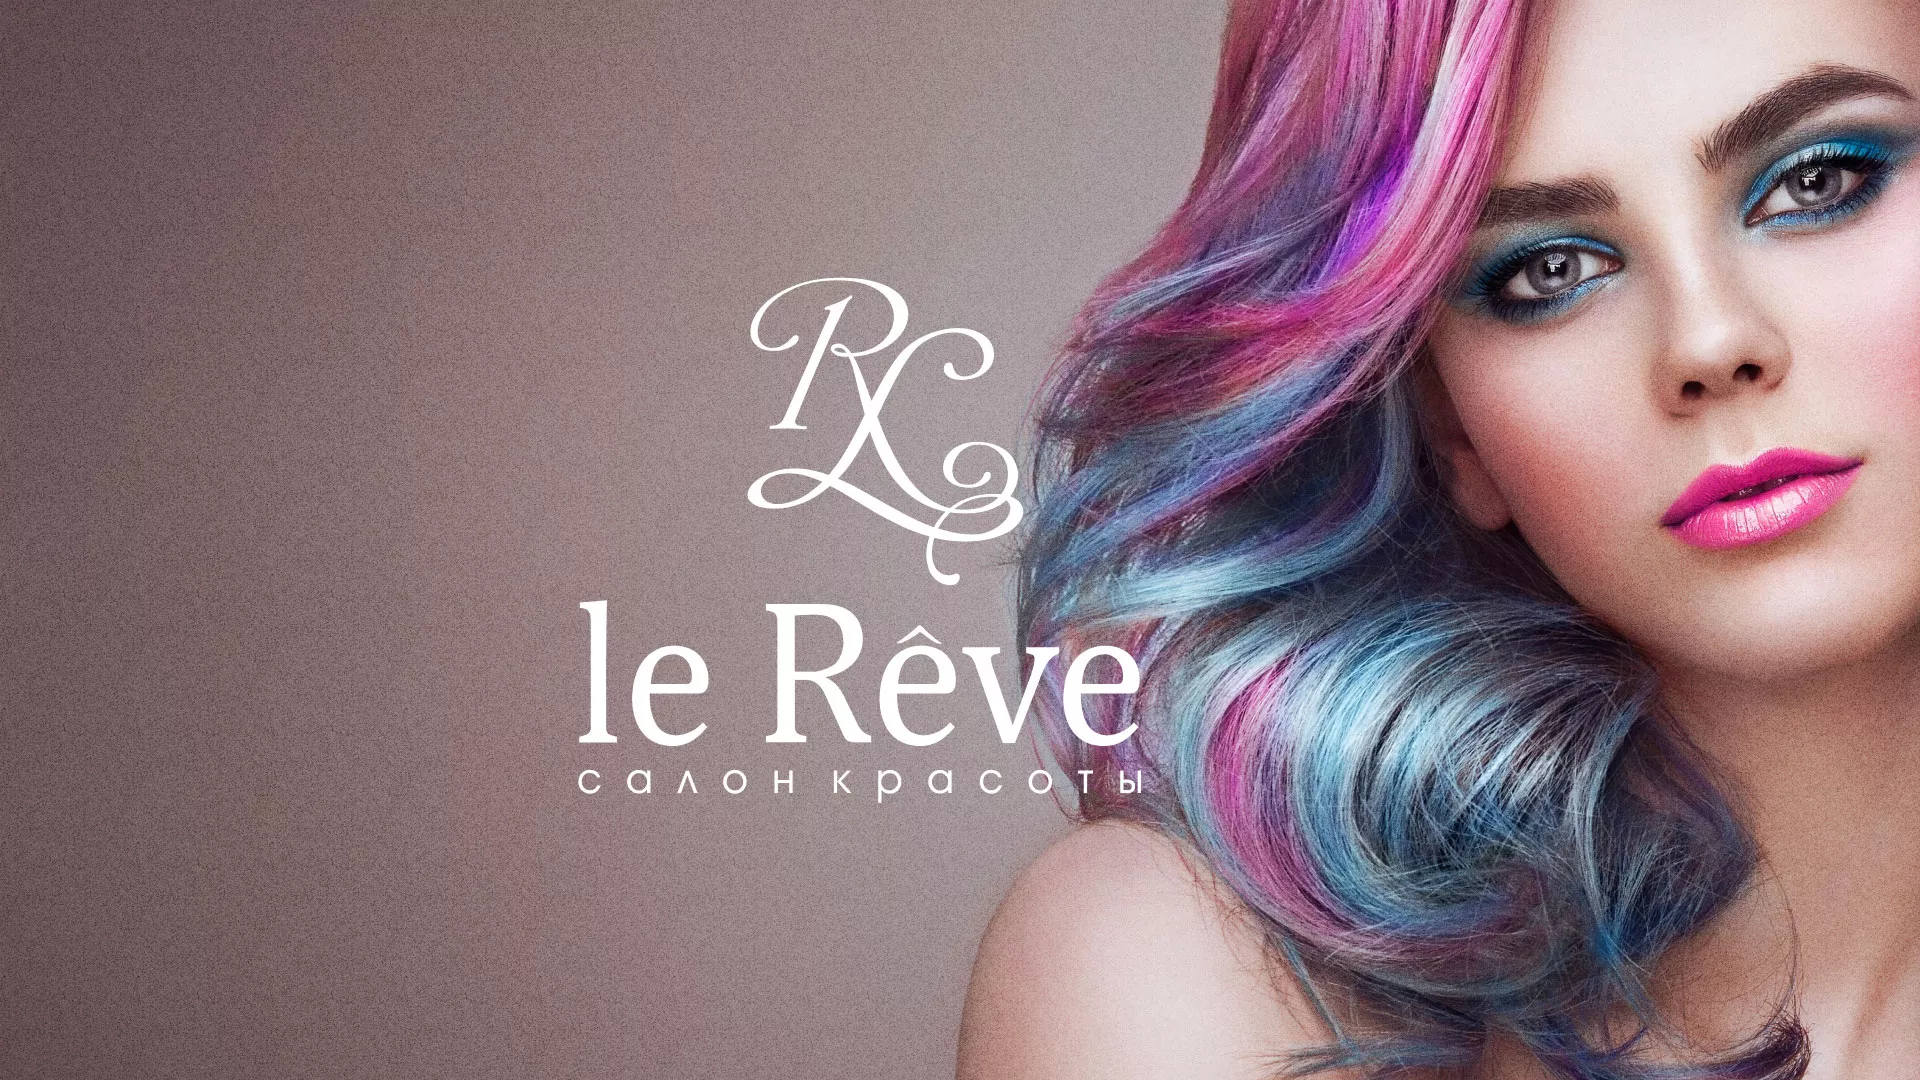 Создание сайта для салона красоты «Le Reve» в Бежецке